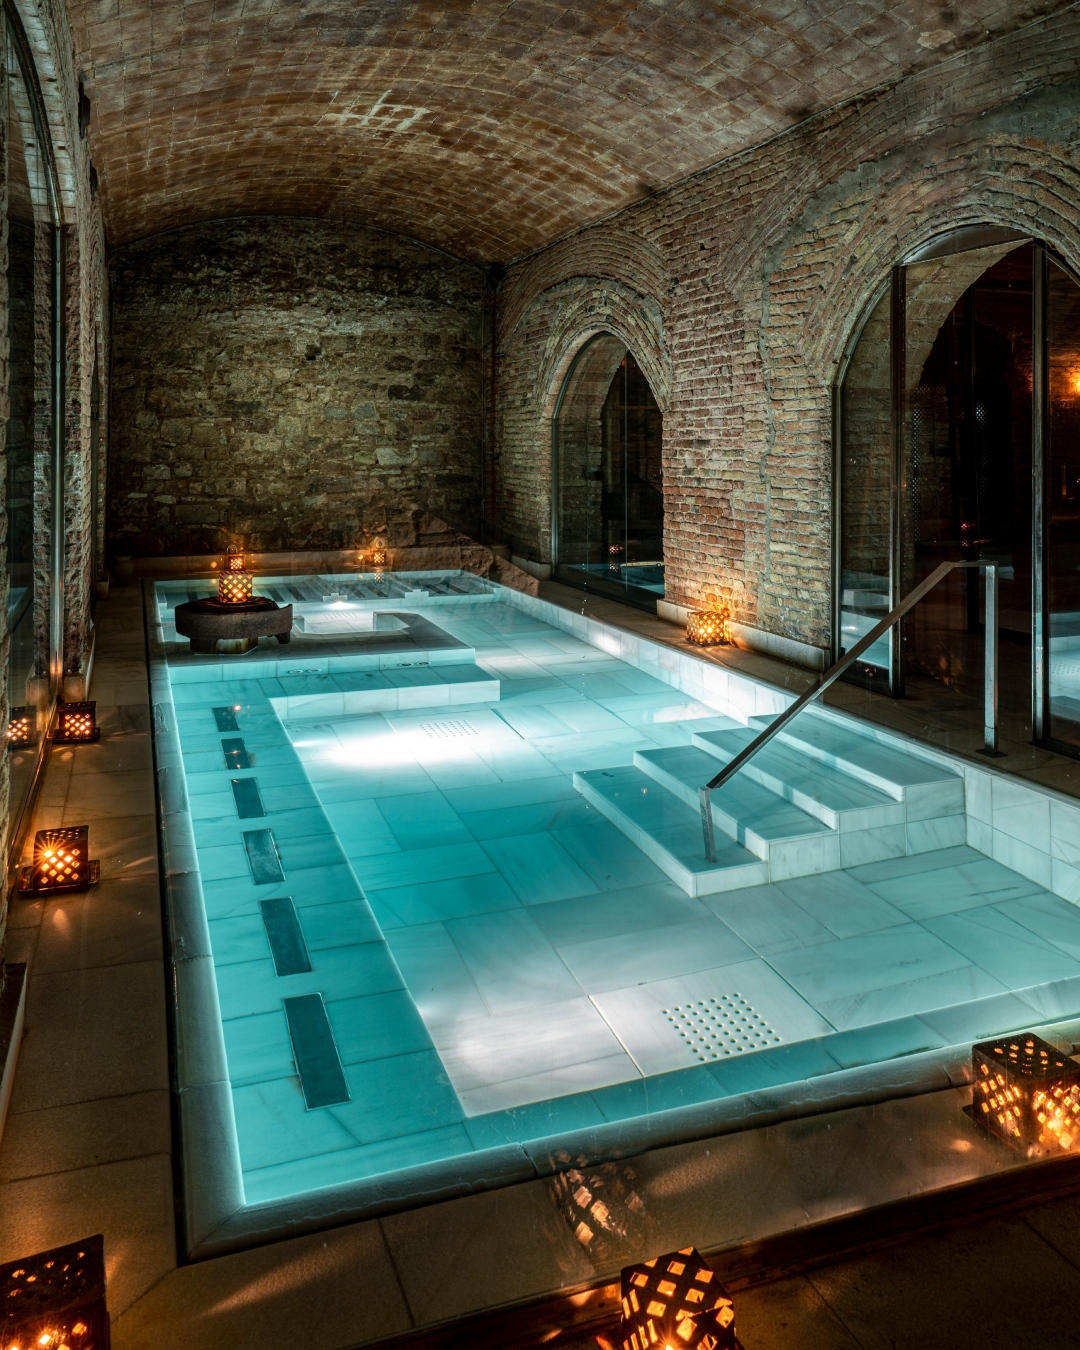 AIRE Ancient Baths ES - Celebra esta Nochevieja compartiendo emociones con tus seres queridos